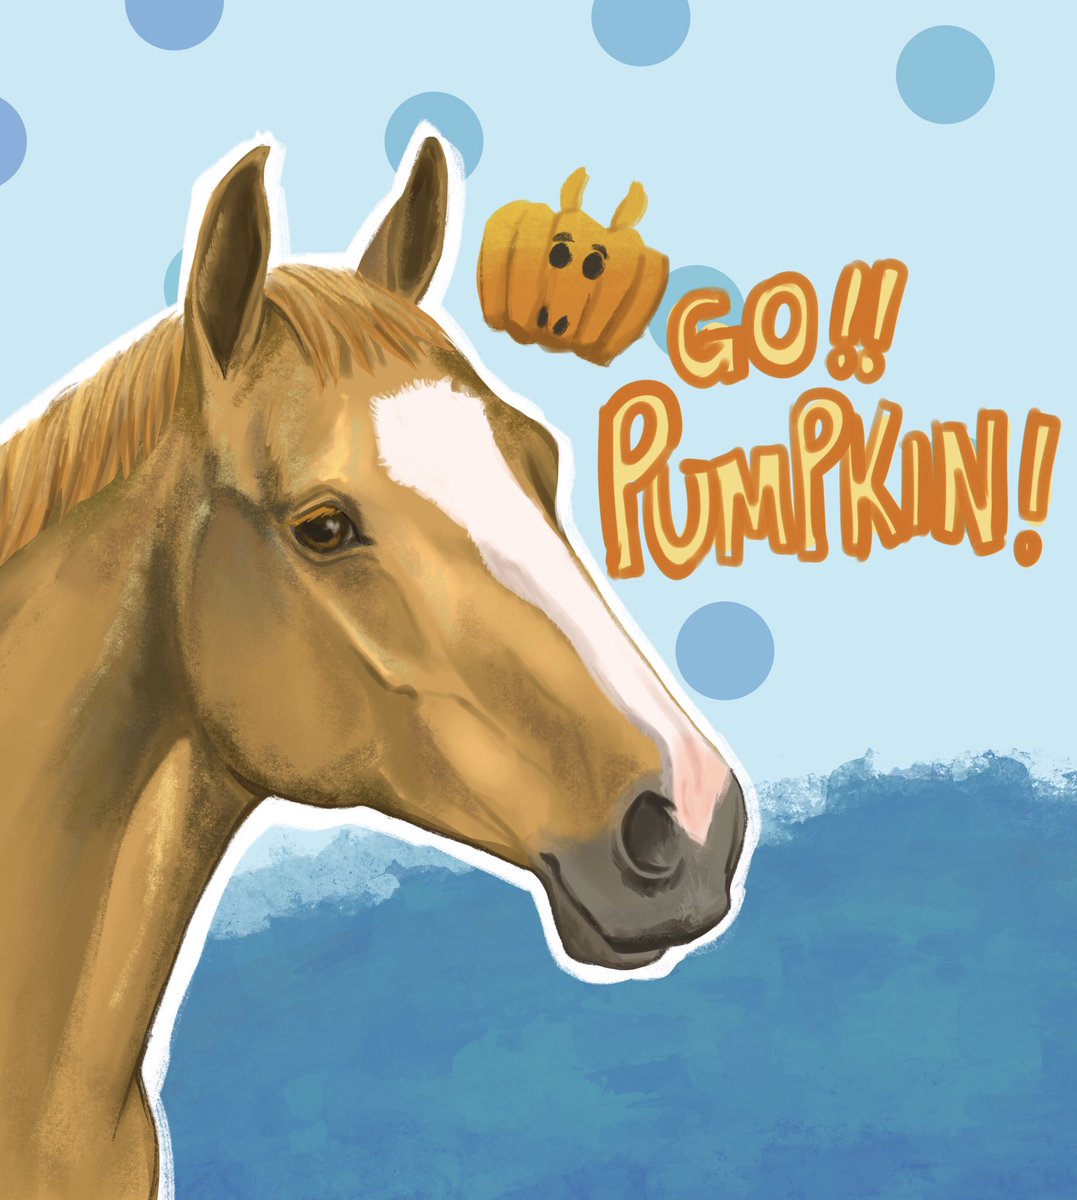 Go Pumpkin!🎃
#Equestrian  #馬術